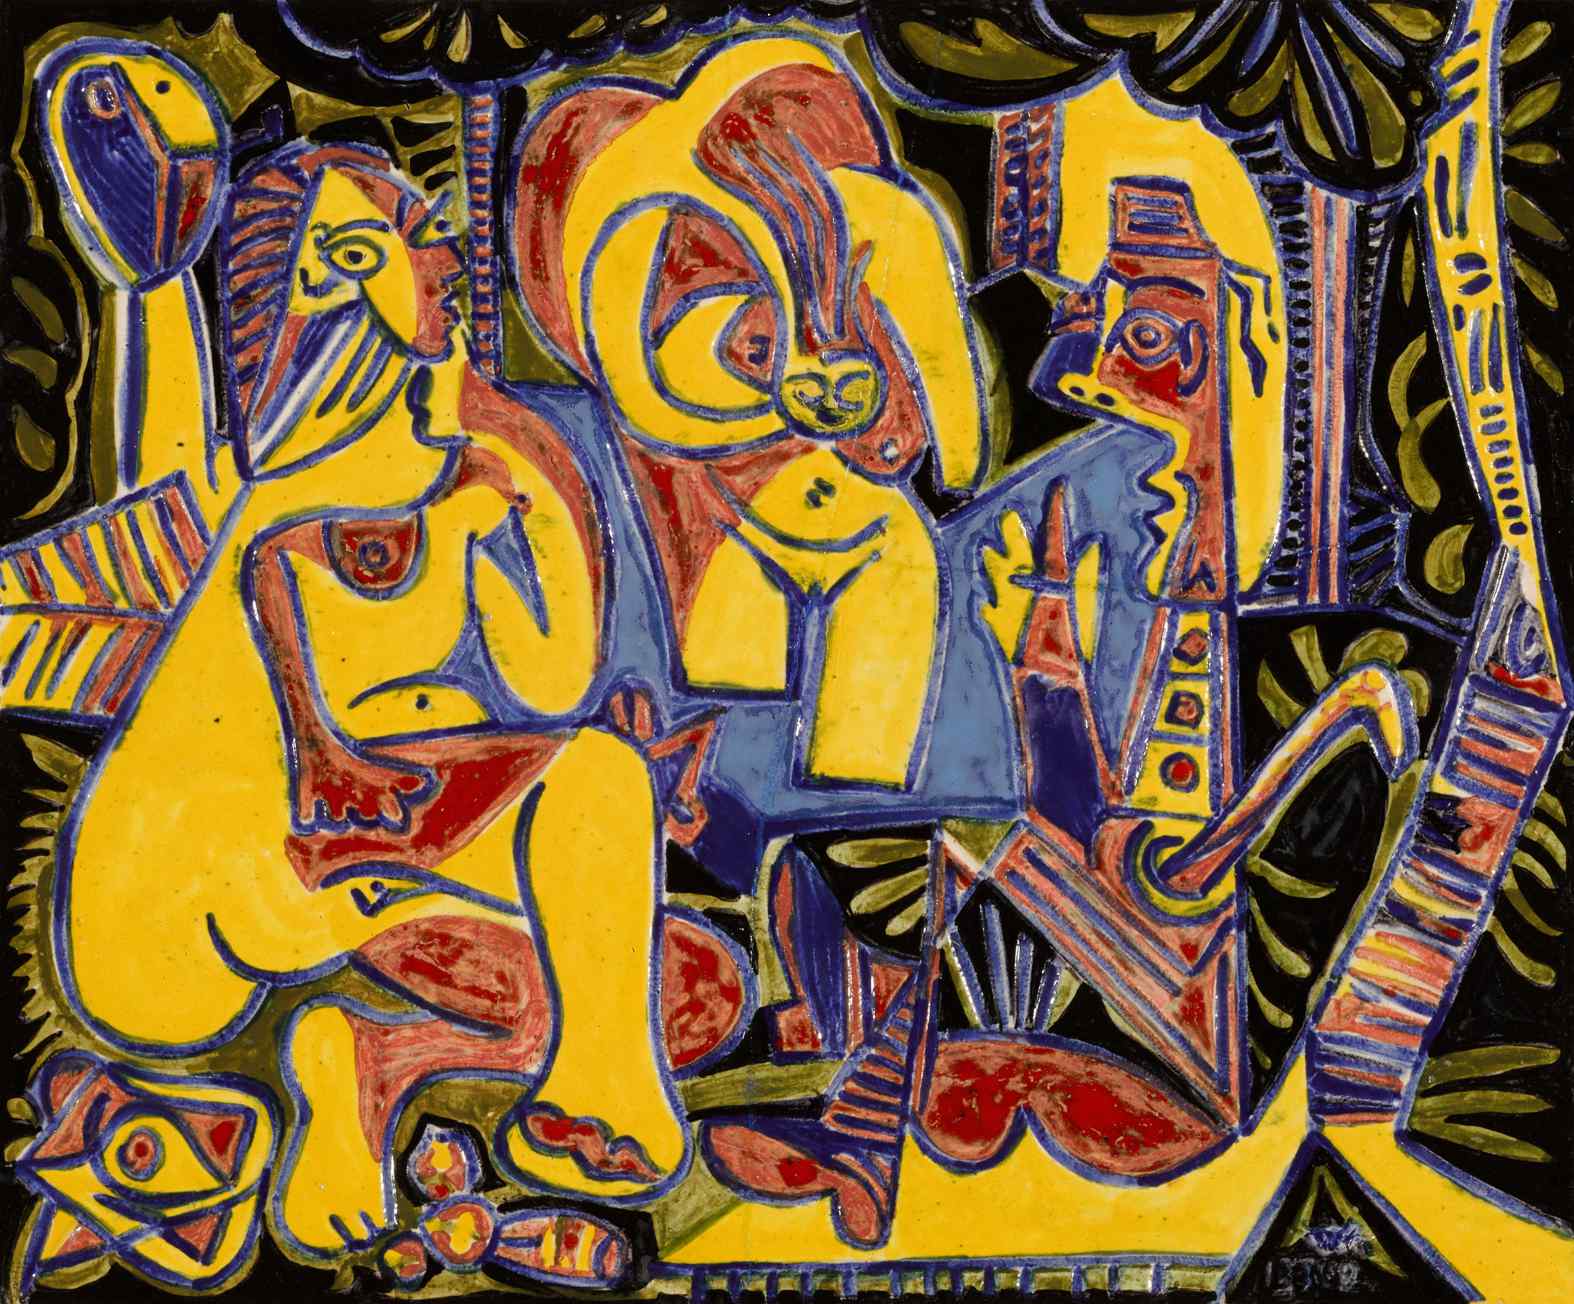 Pablo Picasso's "Le Dejeuner sur l'herbe"